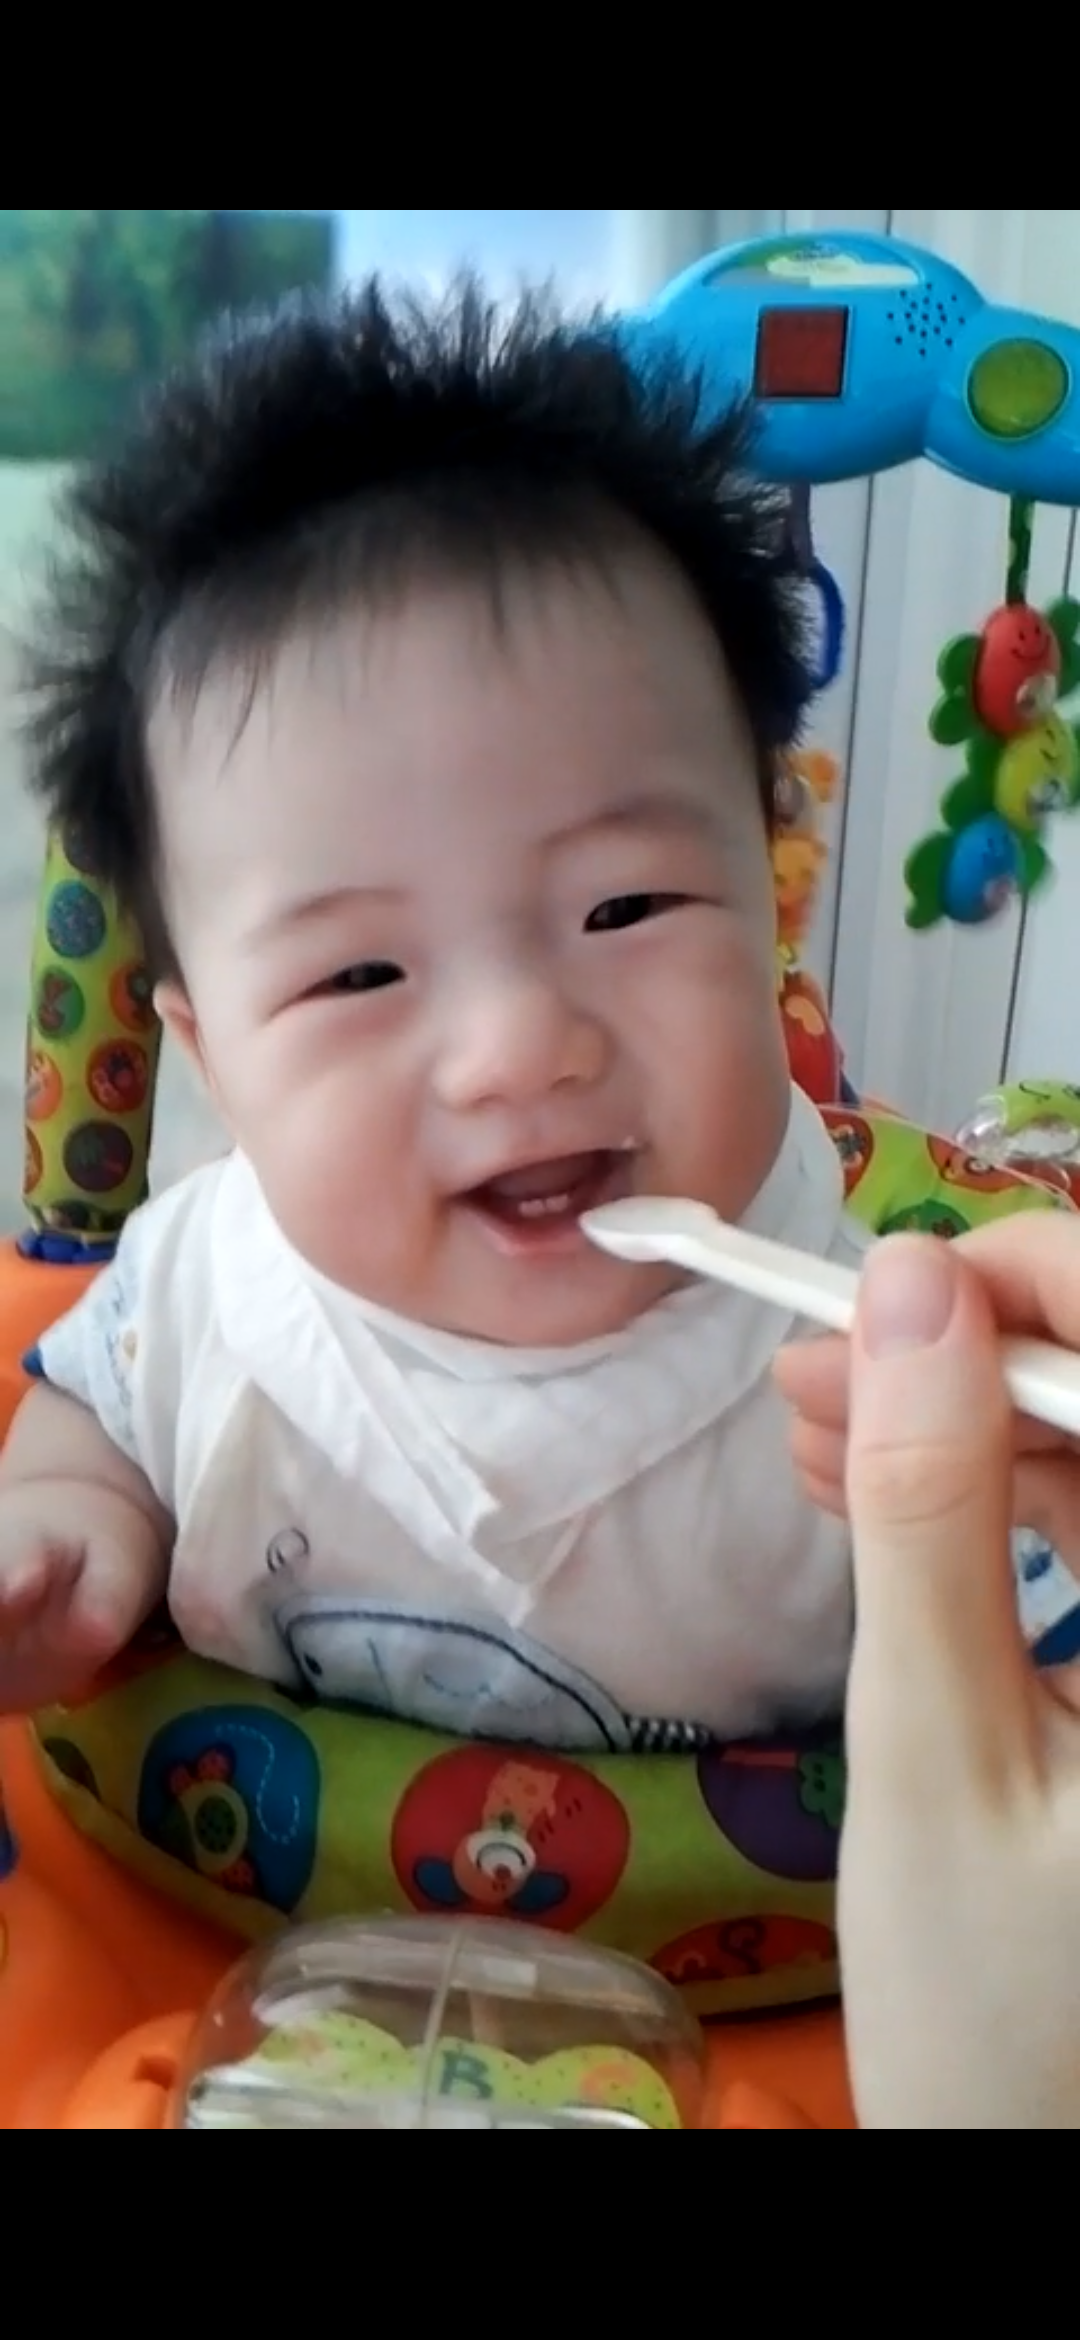 Screenshot_20200720-104050.png : 요거트 처음 먹는아이의 충격적 영상입니다.ㅎ